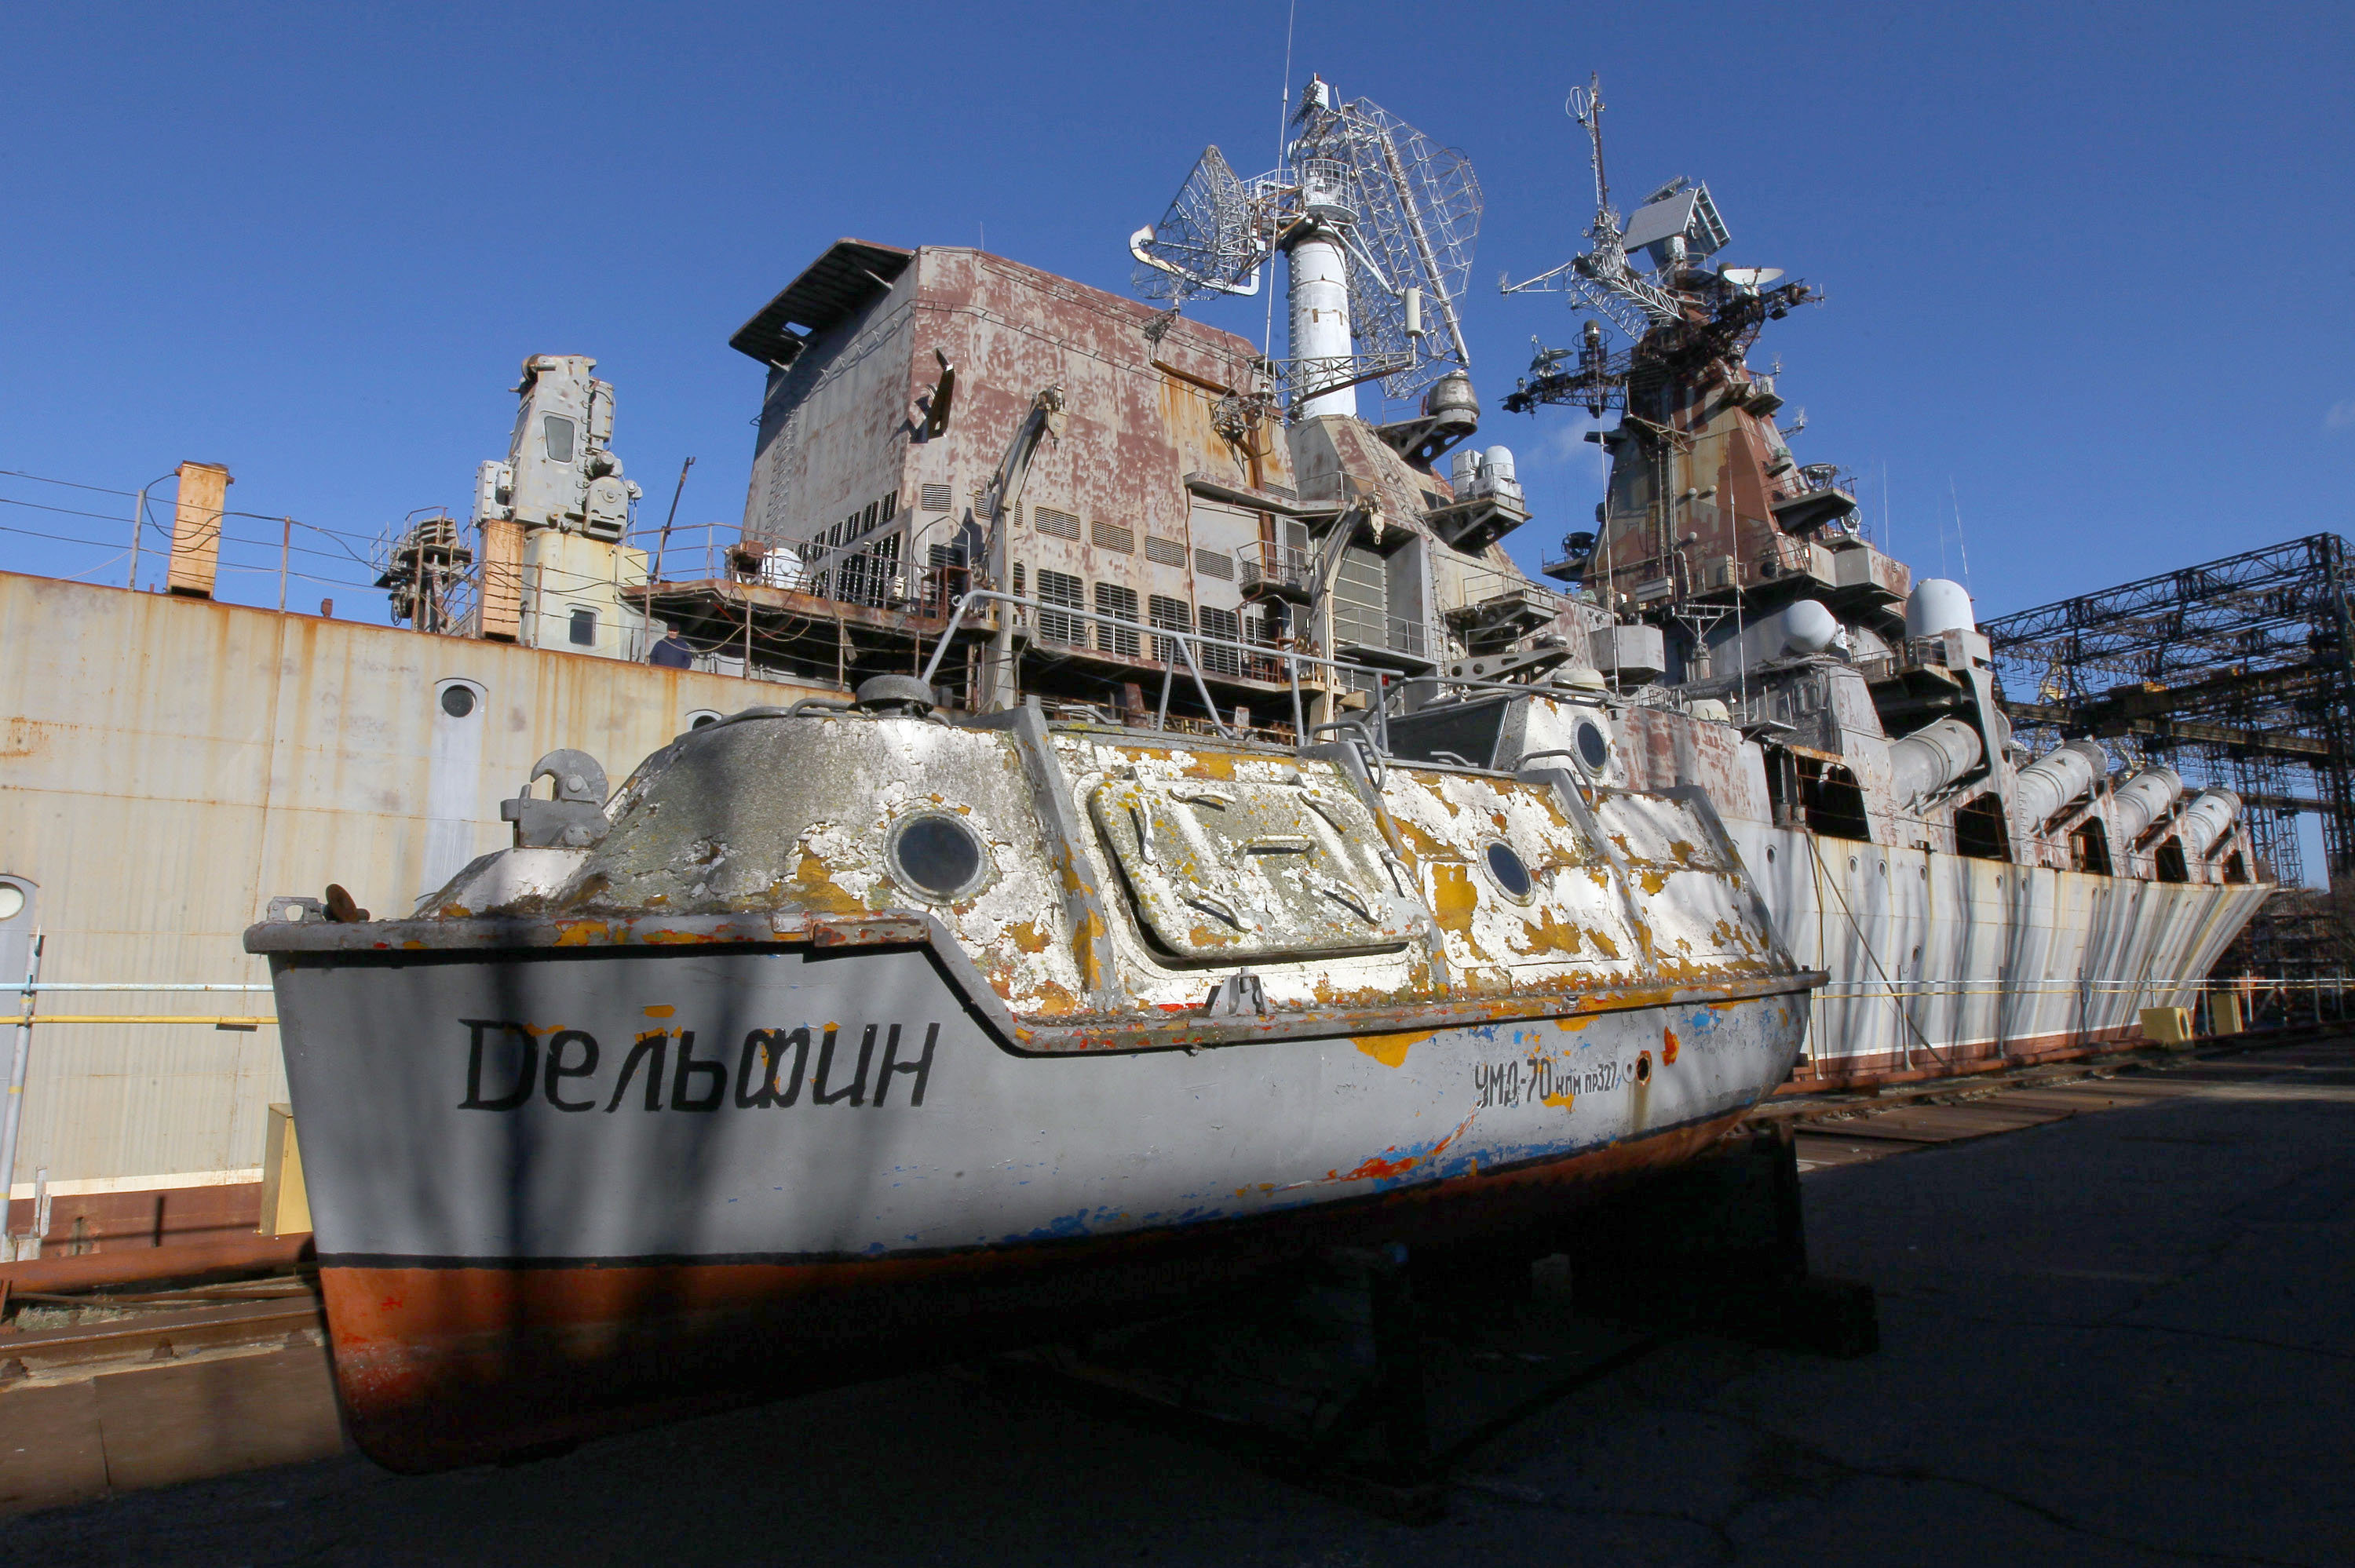 "乌克兰号"万吨级巡洋舰,乌克兰最大作战舰艇,现在却锈迹斑斑